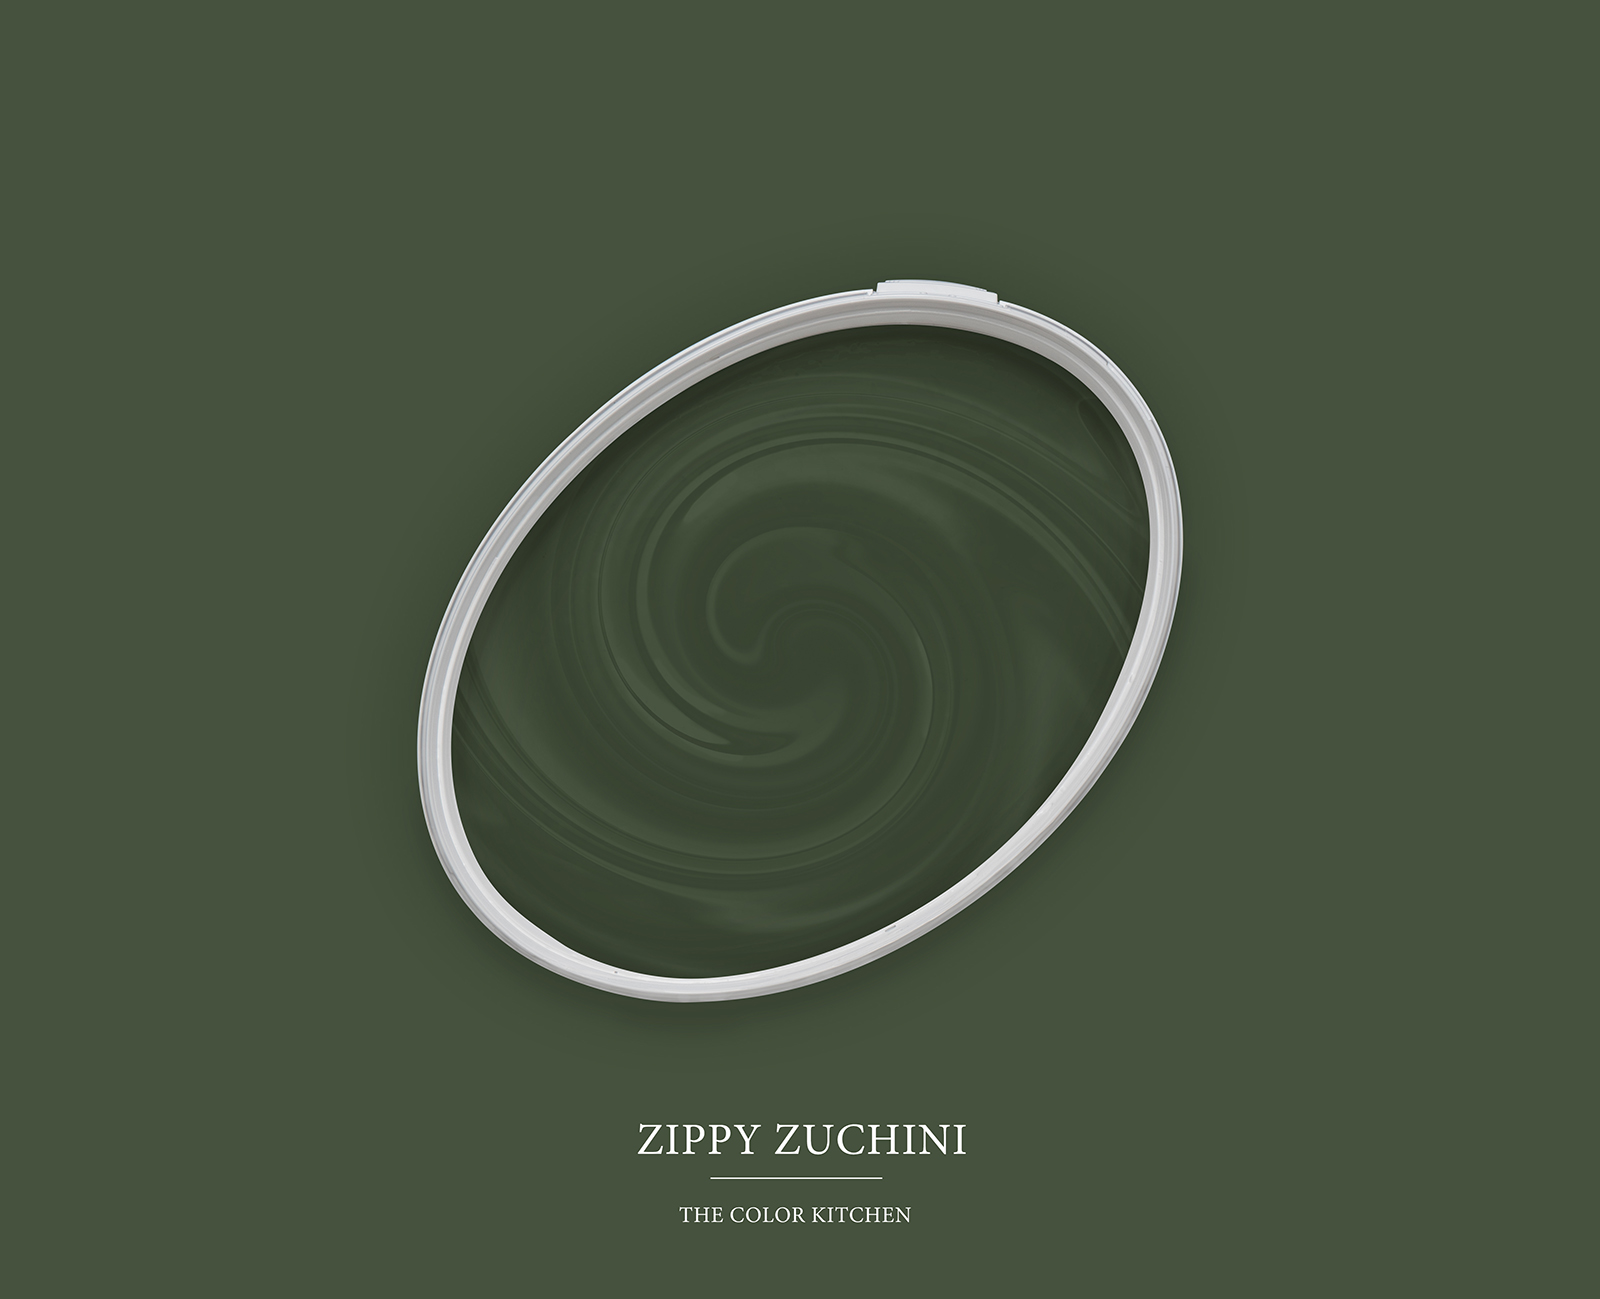 Pittura murale TCK4006 »Zippy Zuchini« in verde scuro intensivo – 5,0 litri
